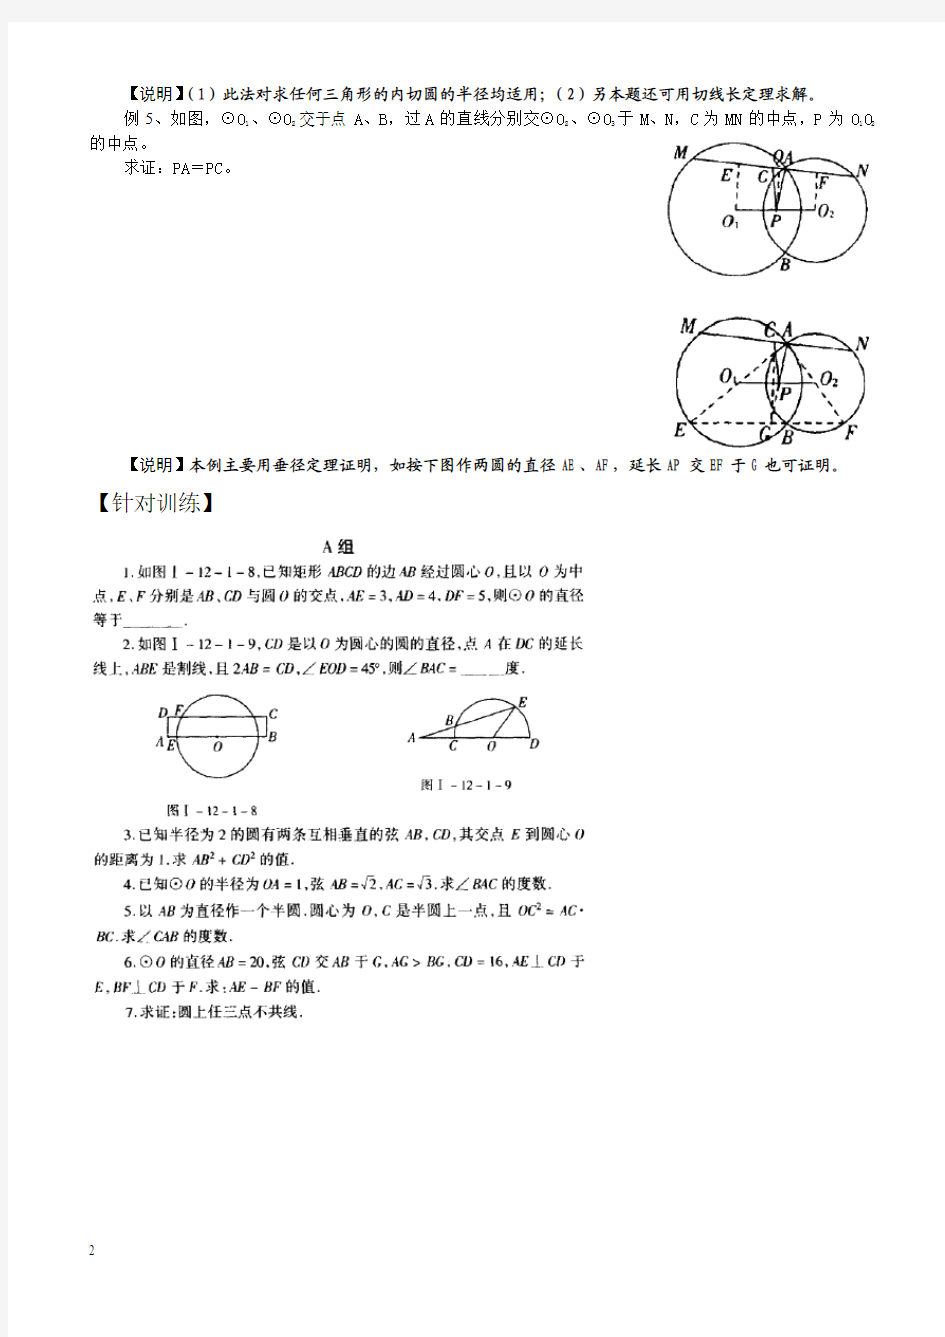 初中数学奥林匹克竞赛解题方法大全(配PDF版)-第12章-圆